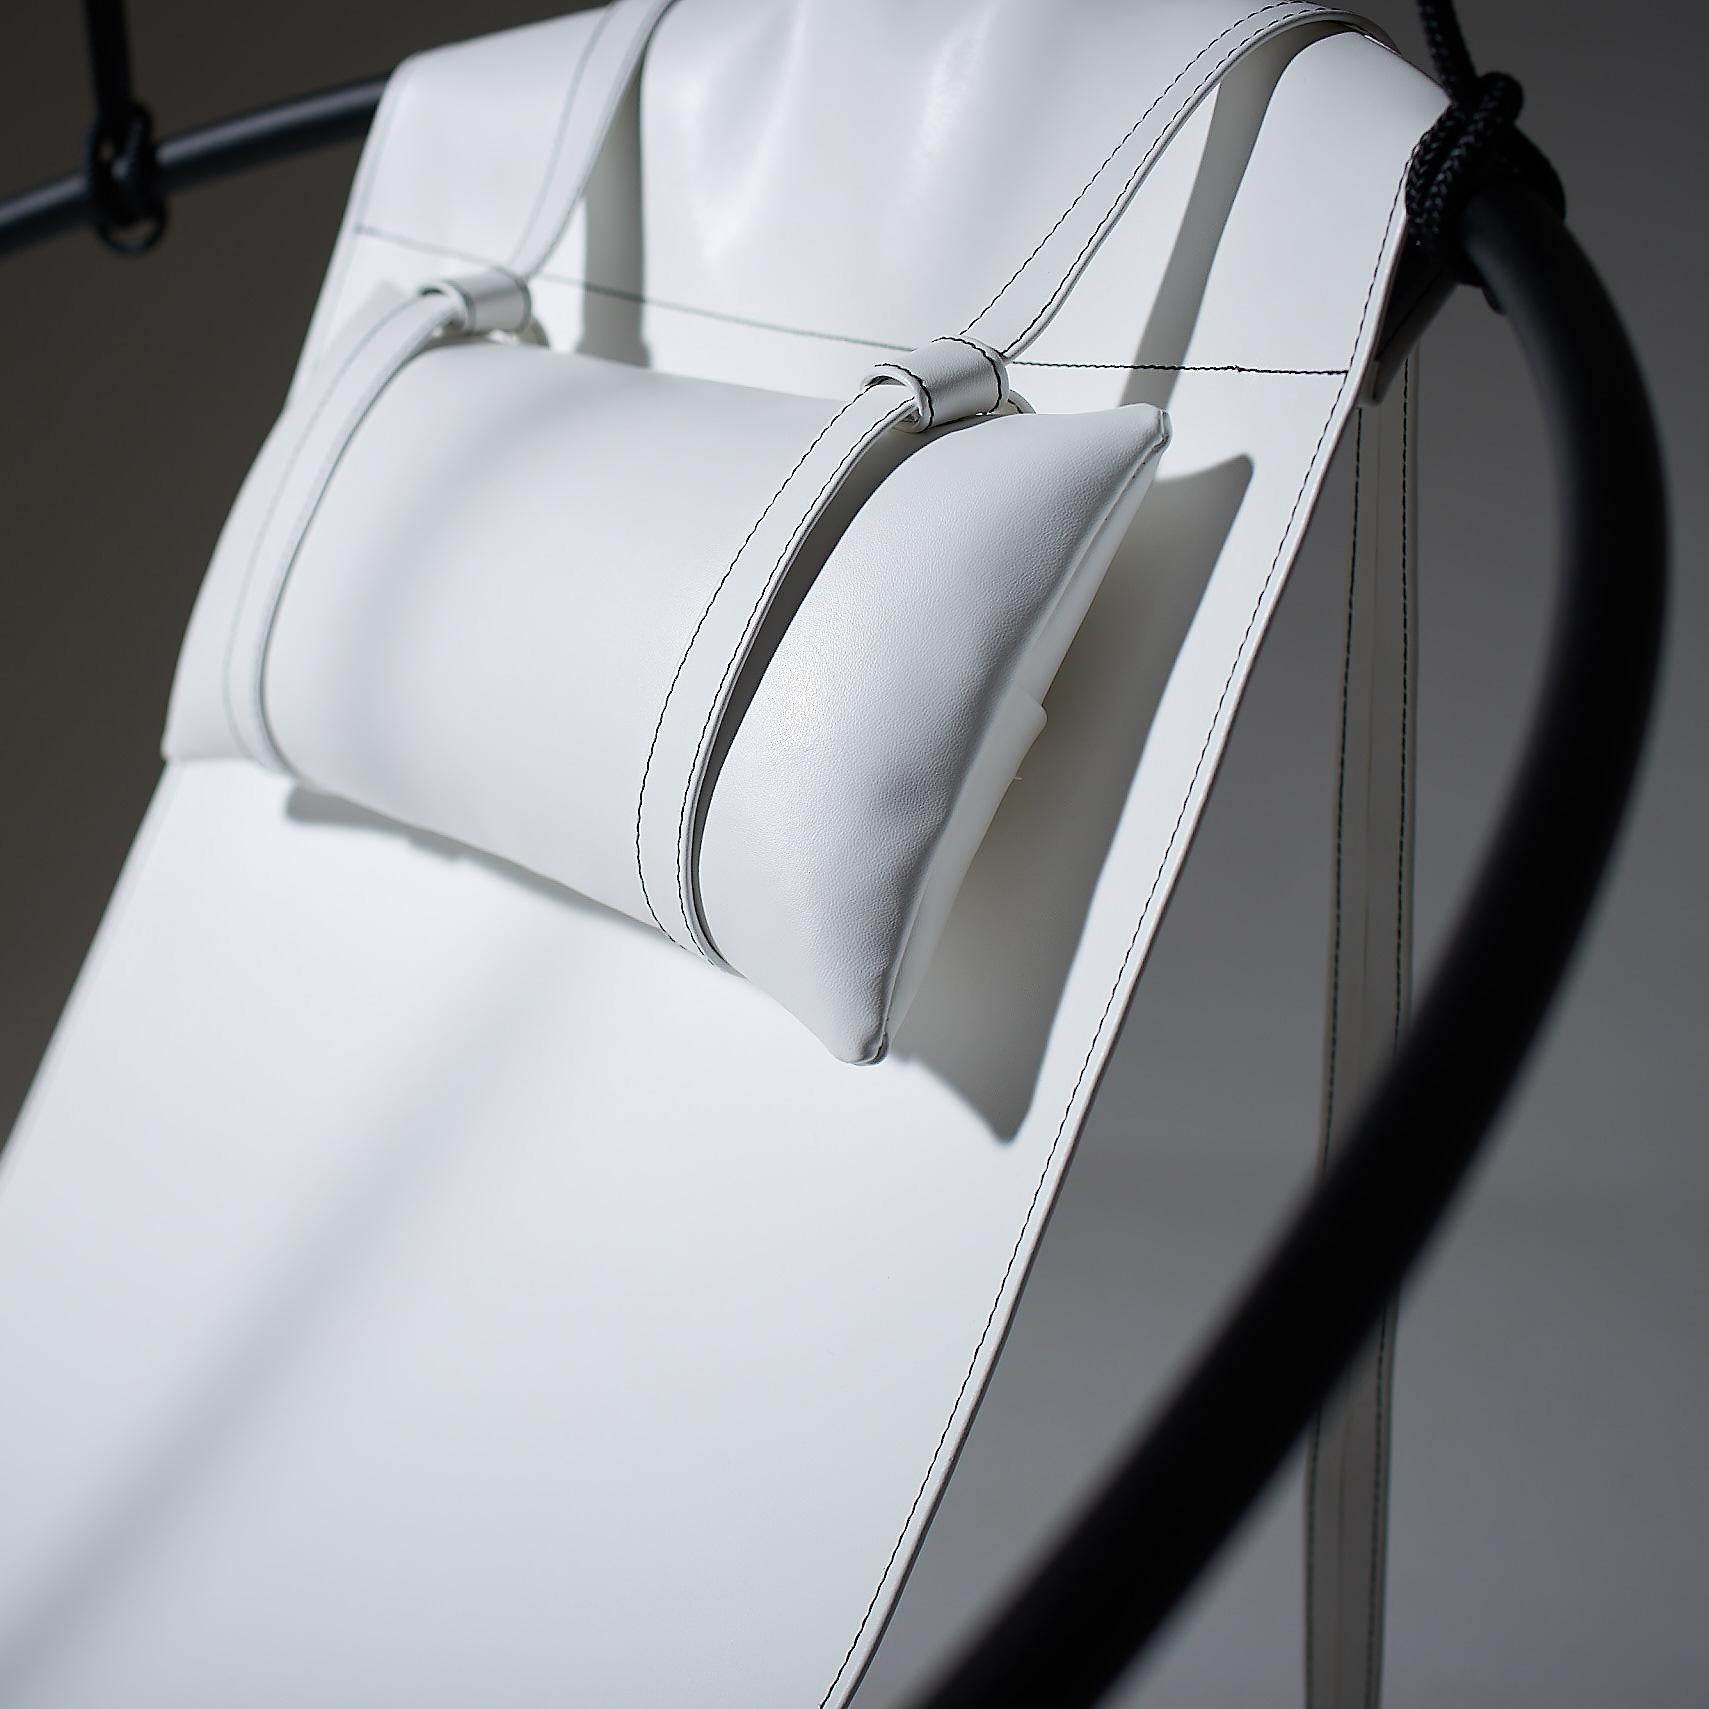 Dépouillé de tout excès, ce fauteuil suspendu présente un cadre circulaire dans lequel pendent des feuilles de cuir souple, pour créer une expérience élégante, sexy et très confortable. Les lignes épurées et la légèreté de cette chaise lui